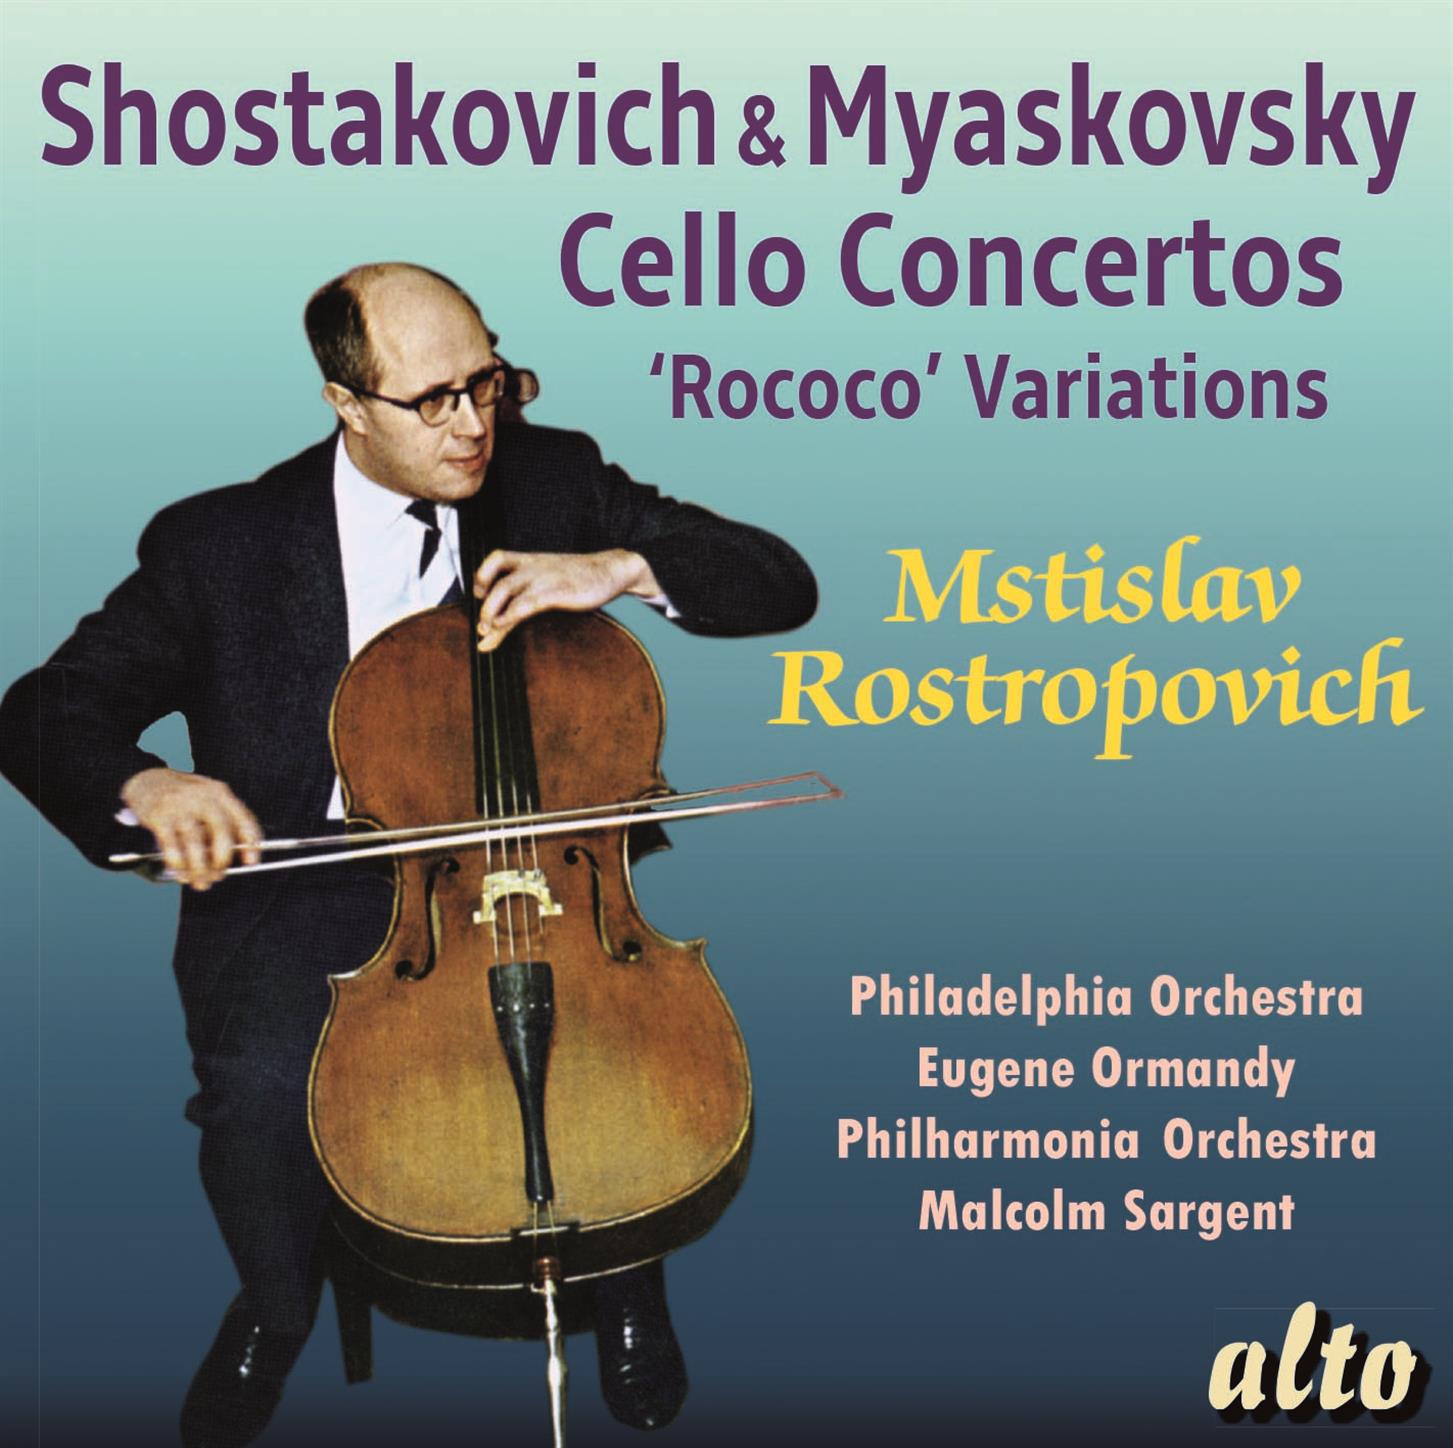 Shostakovich & Myaskovsky: Cello Concertos